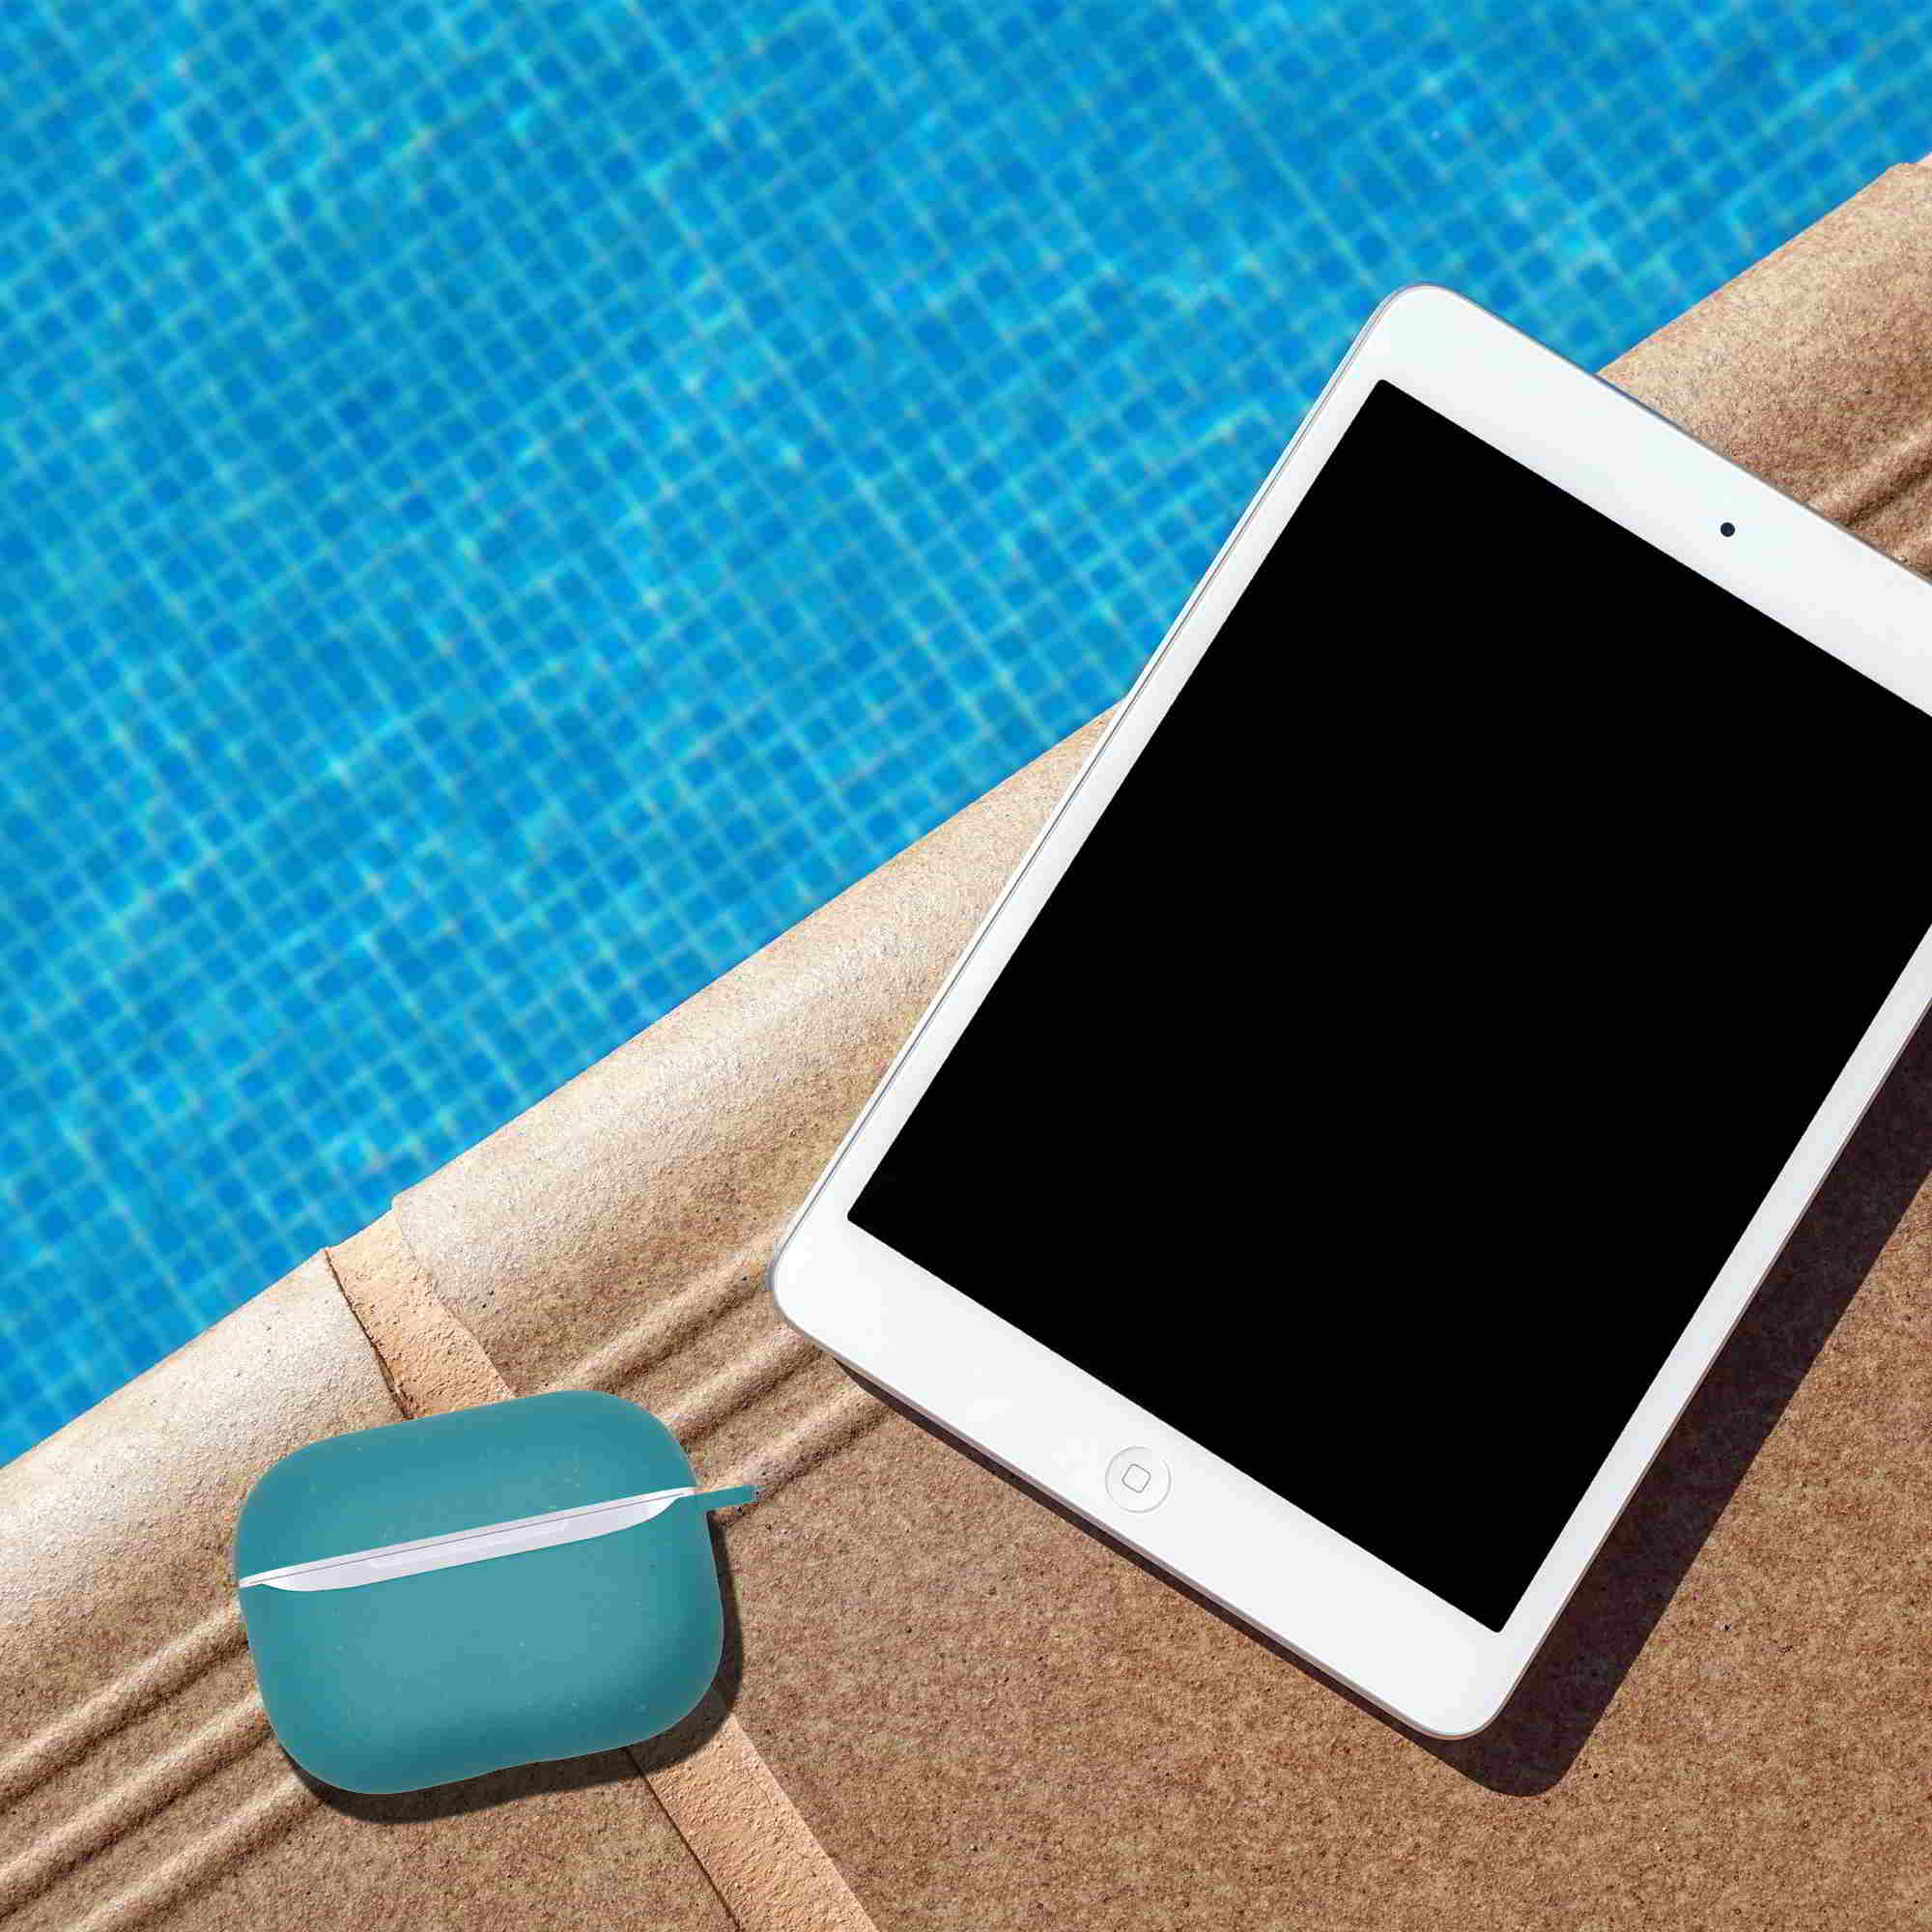 Apple Airpods Pro Ocean Blue Case und iPad neben einem Pool